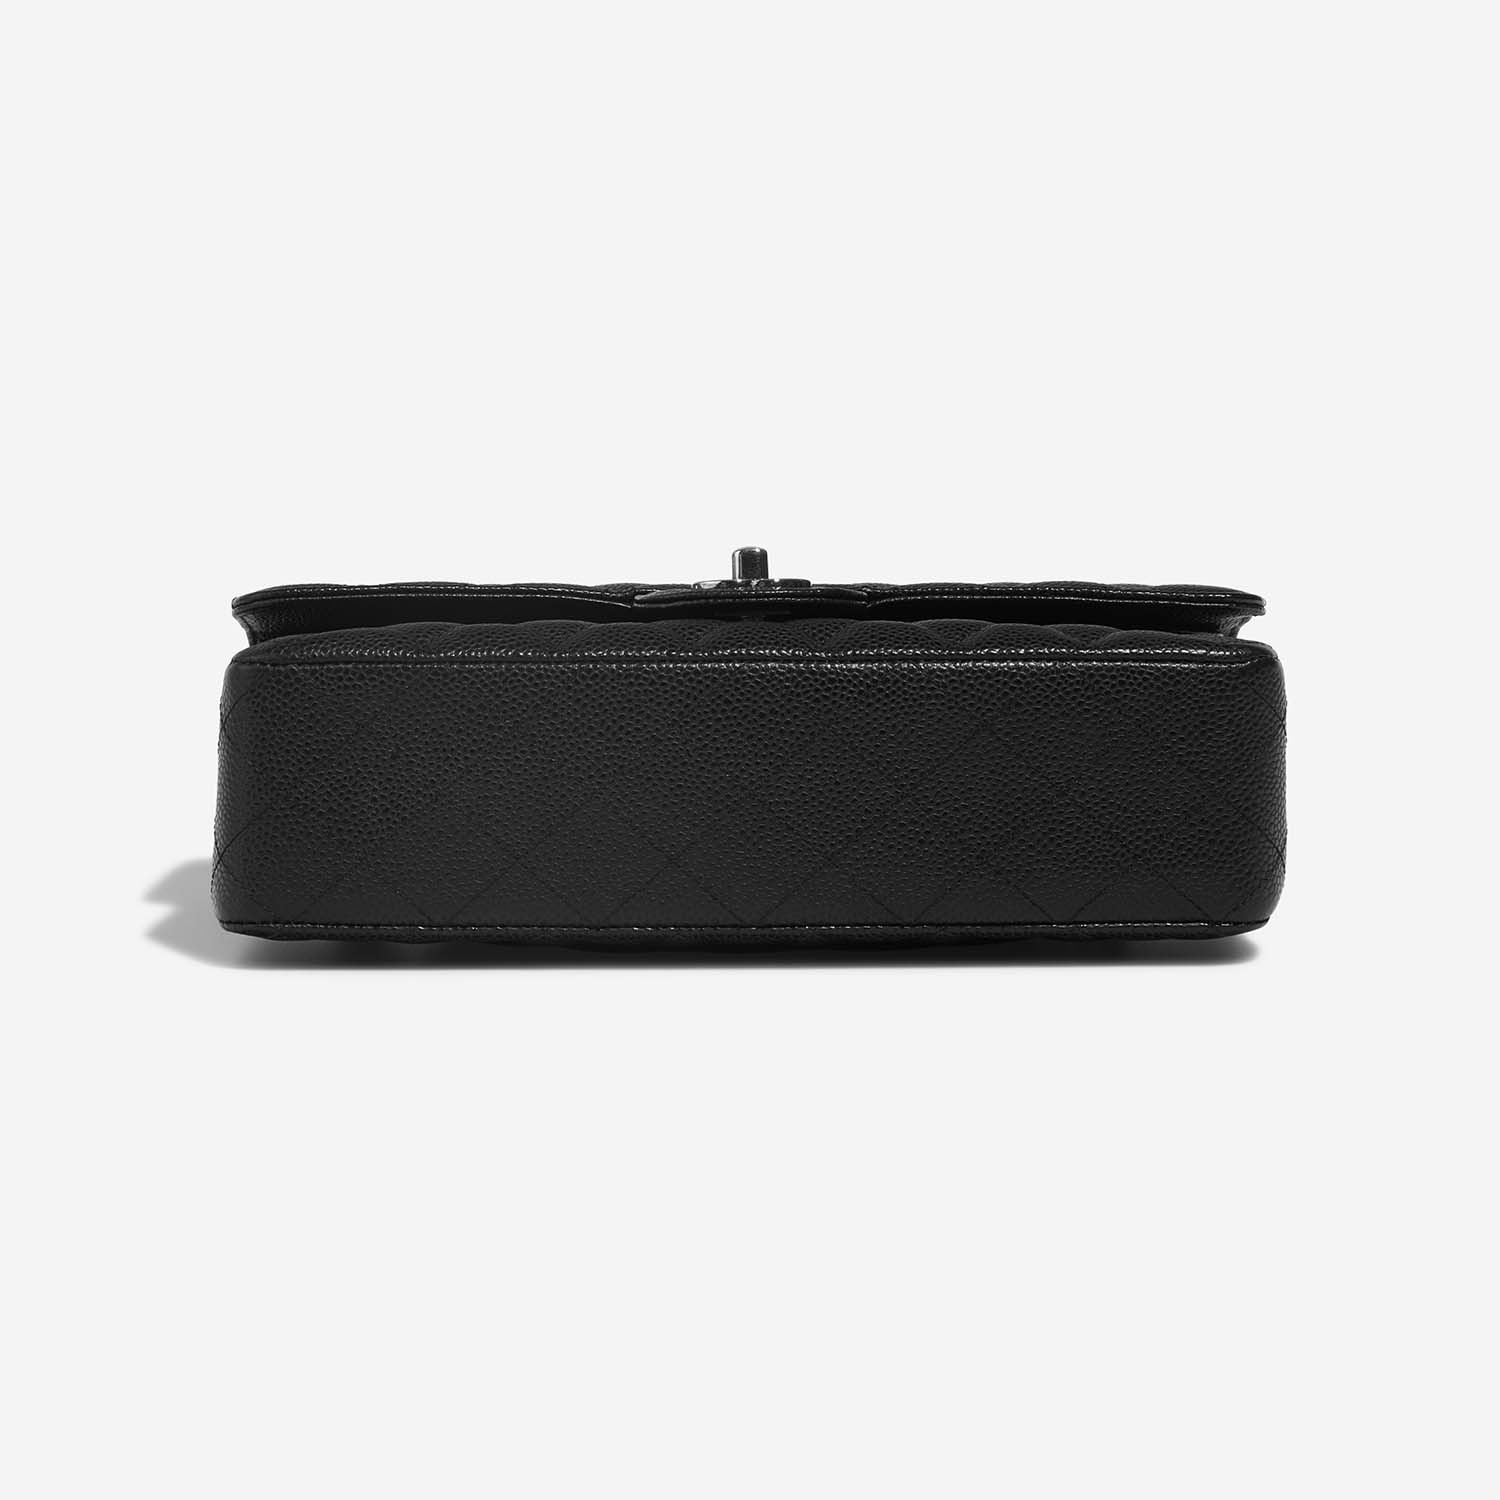 Chanel Timeless Medium Black Bottom | Verkaufen Sie Ihre Designer-Tasche auf Saclab.com